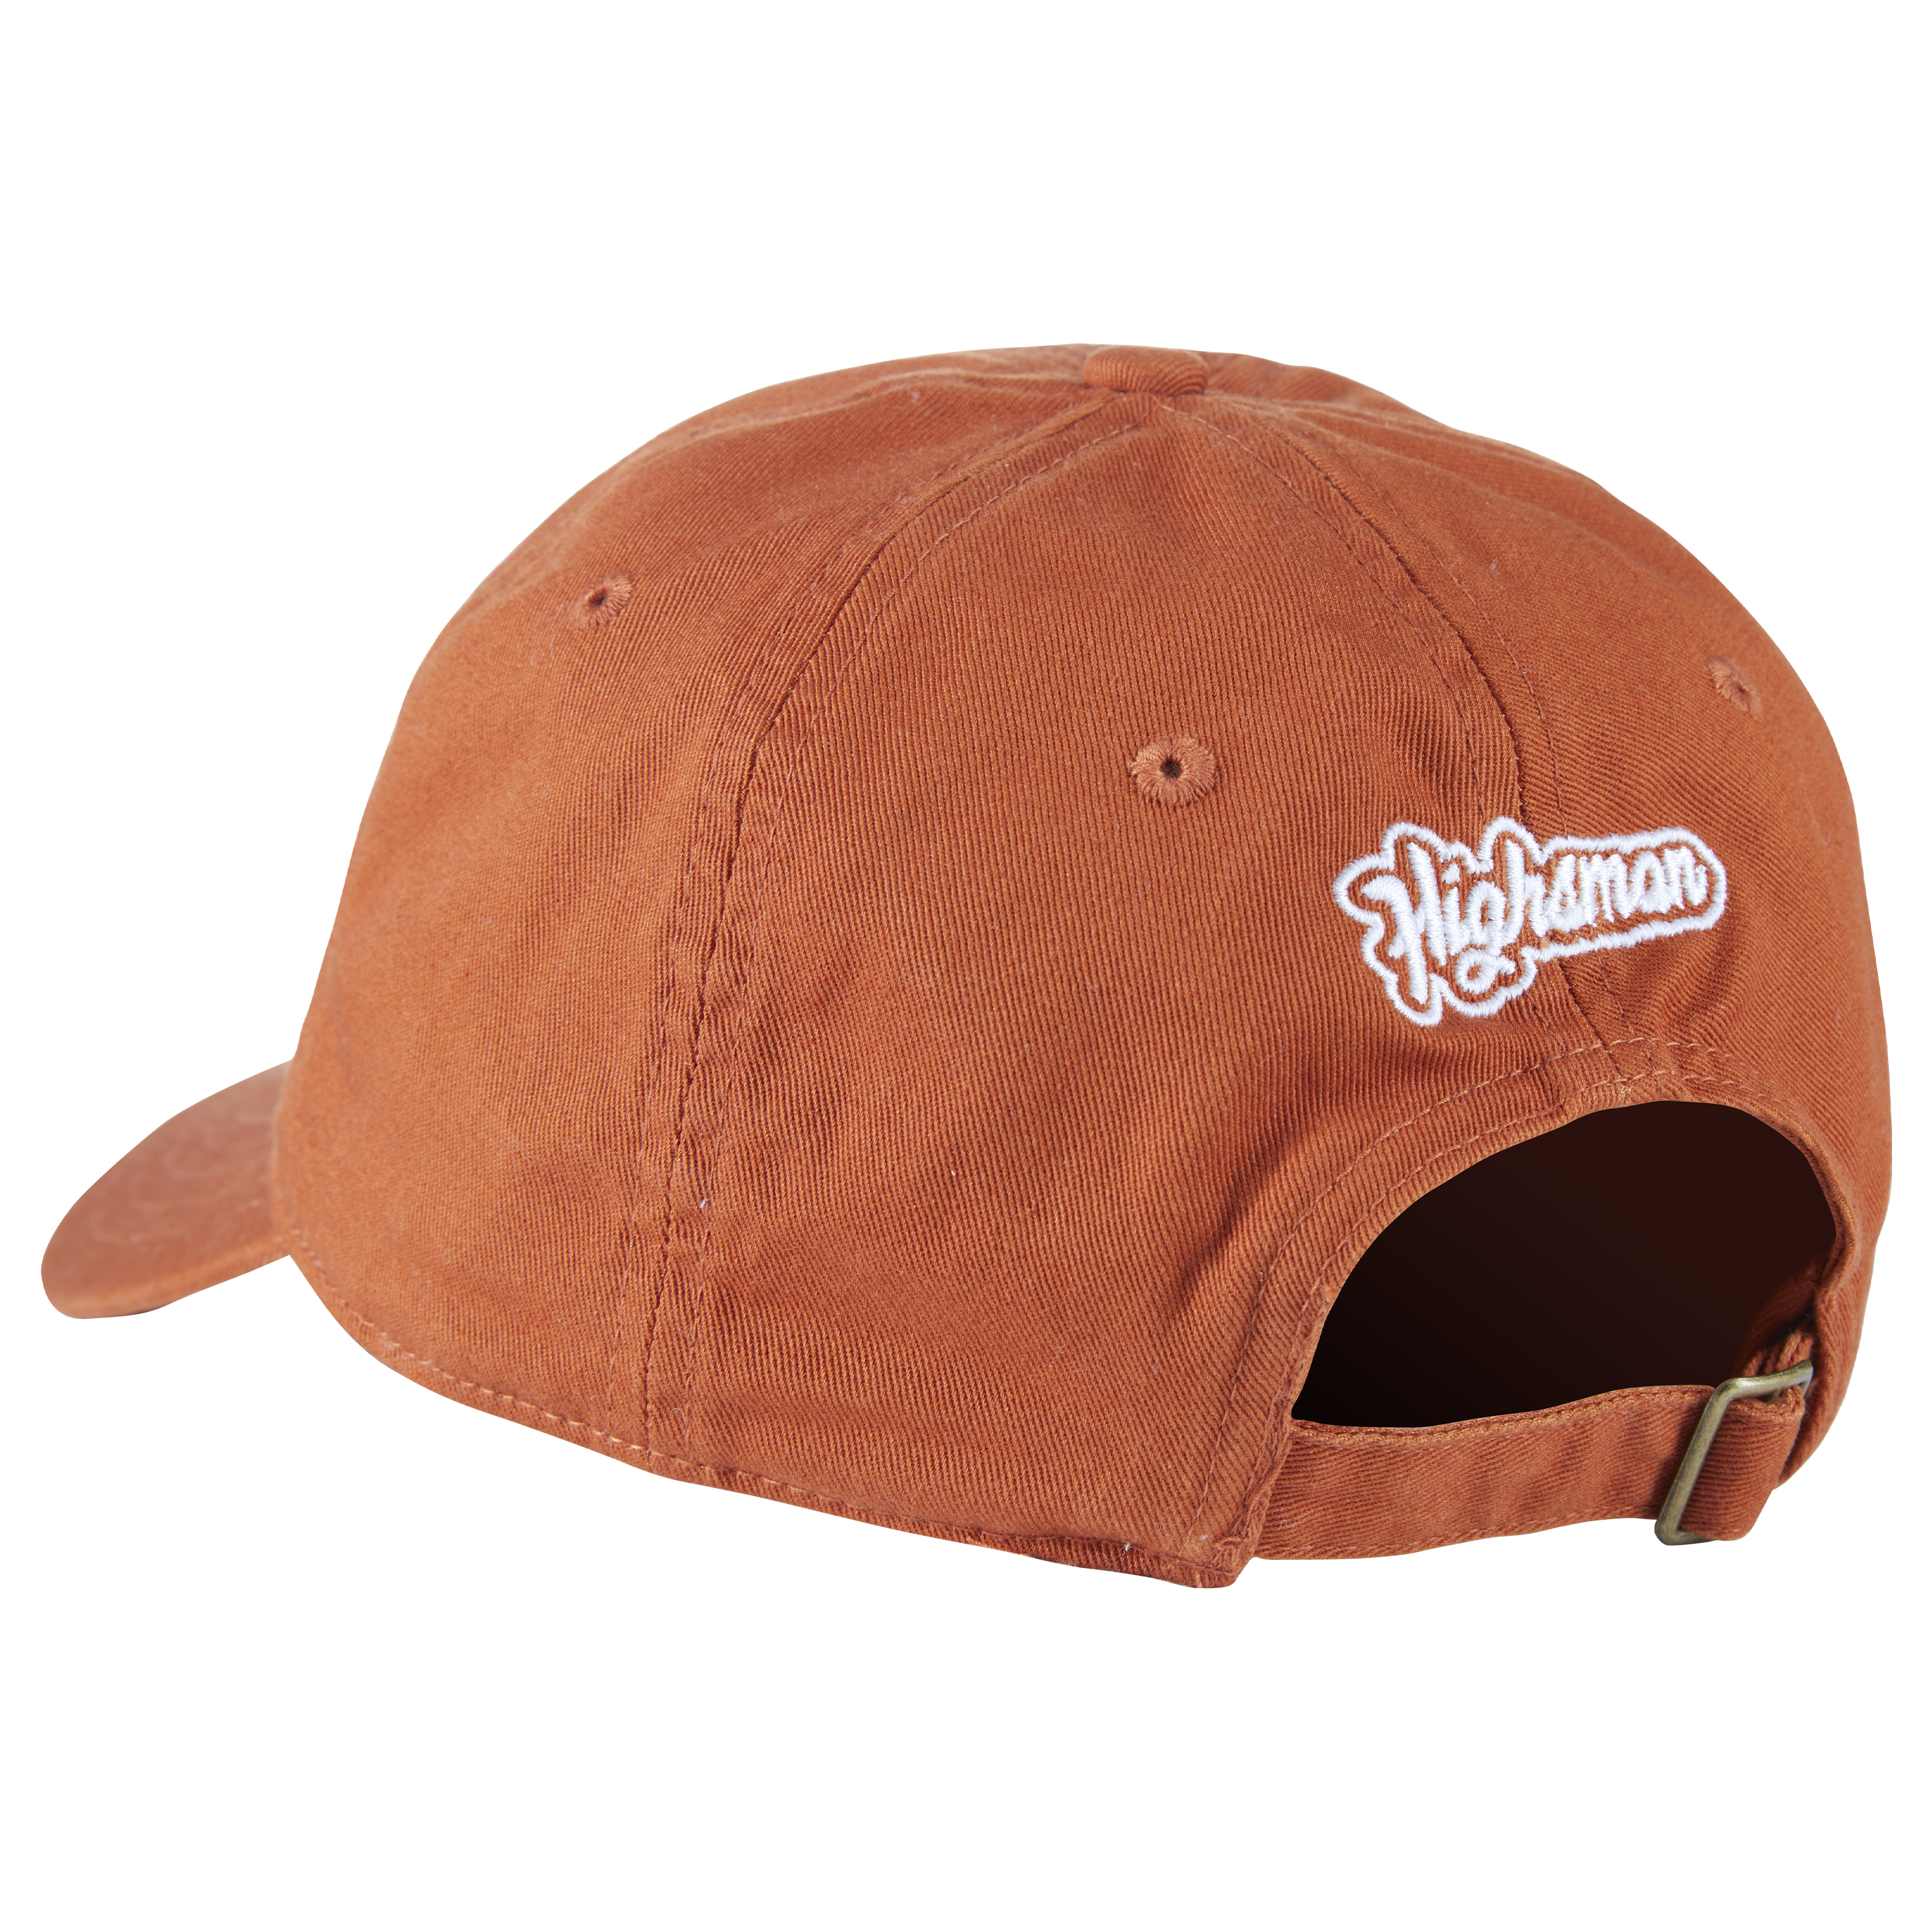 Limited Edition Highsman "Hook'Em" Strapback Hat